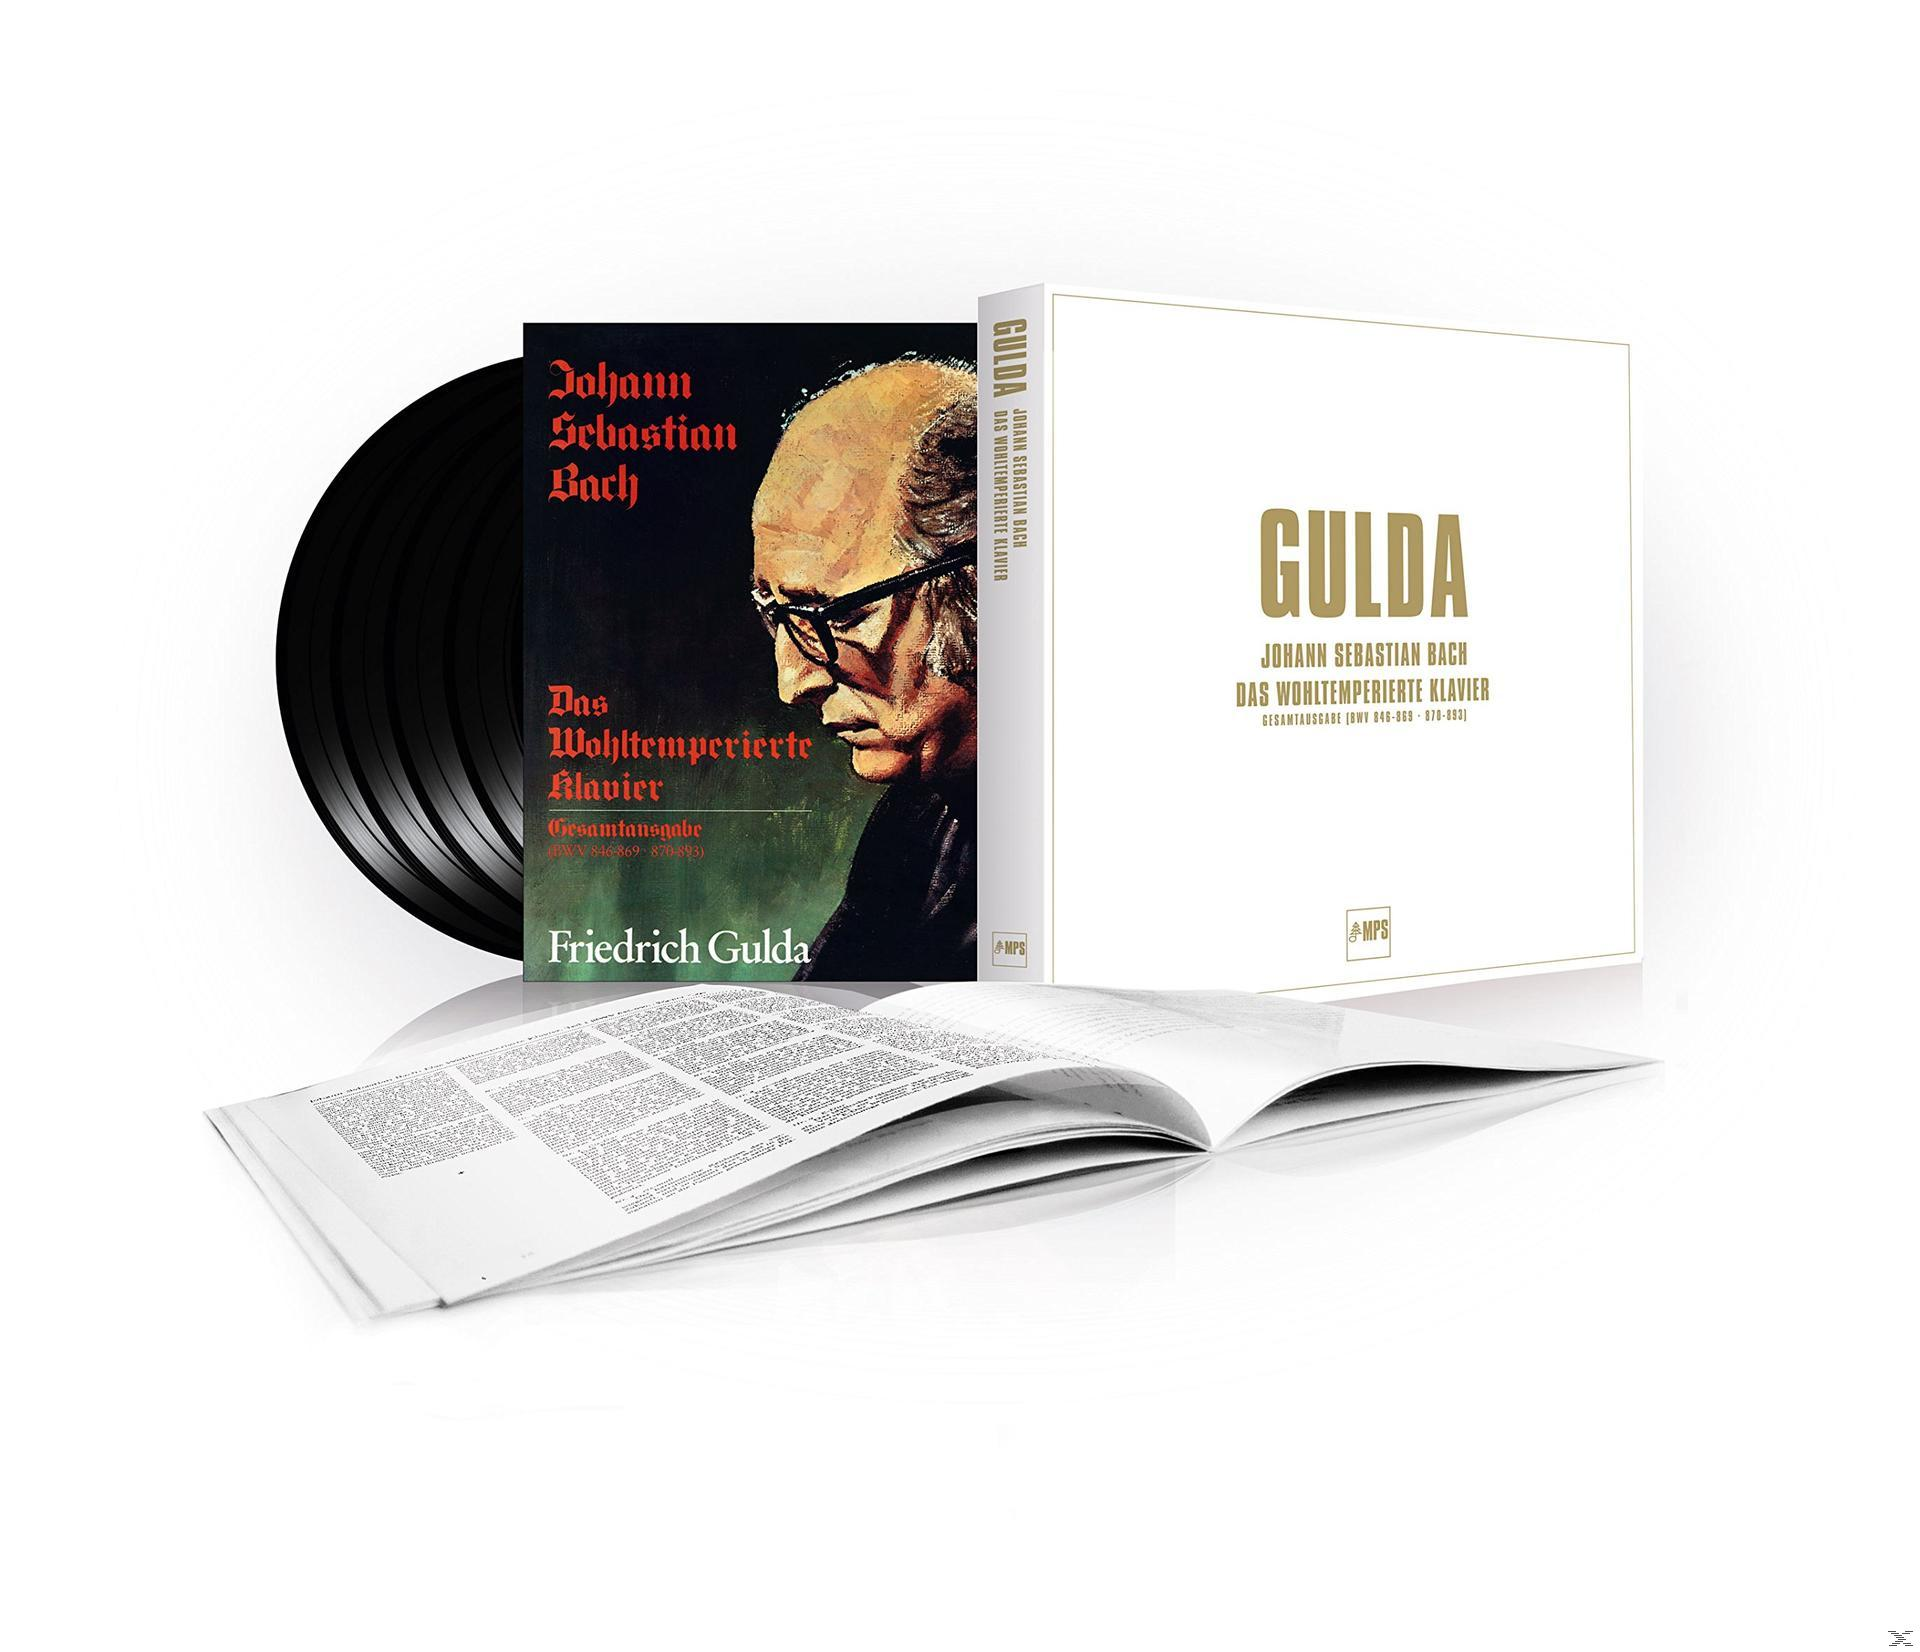 Friedrich Gulda - Bach: Das (Vinyl) - Wohltemperierte Klavier